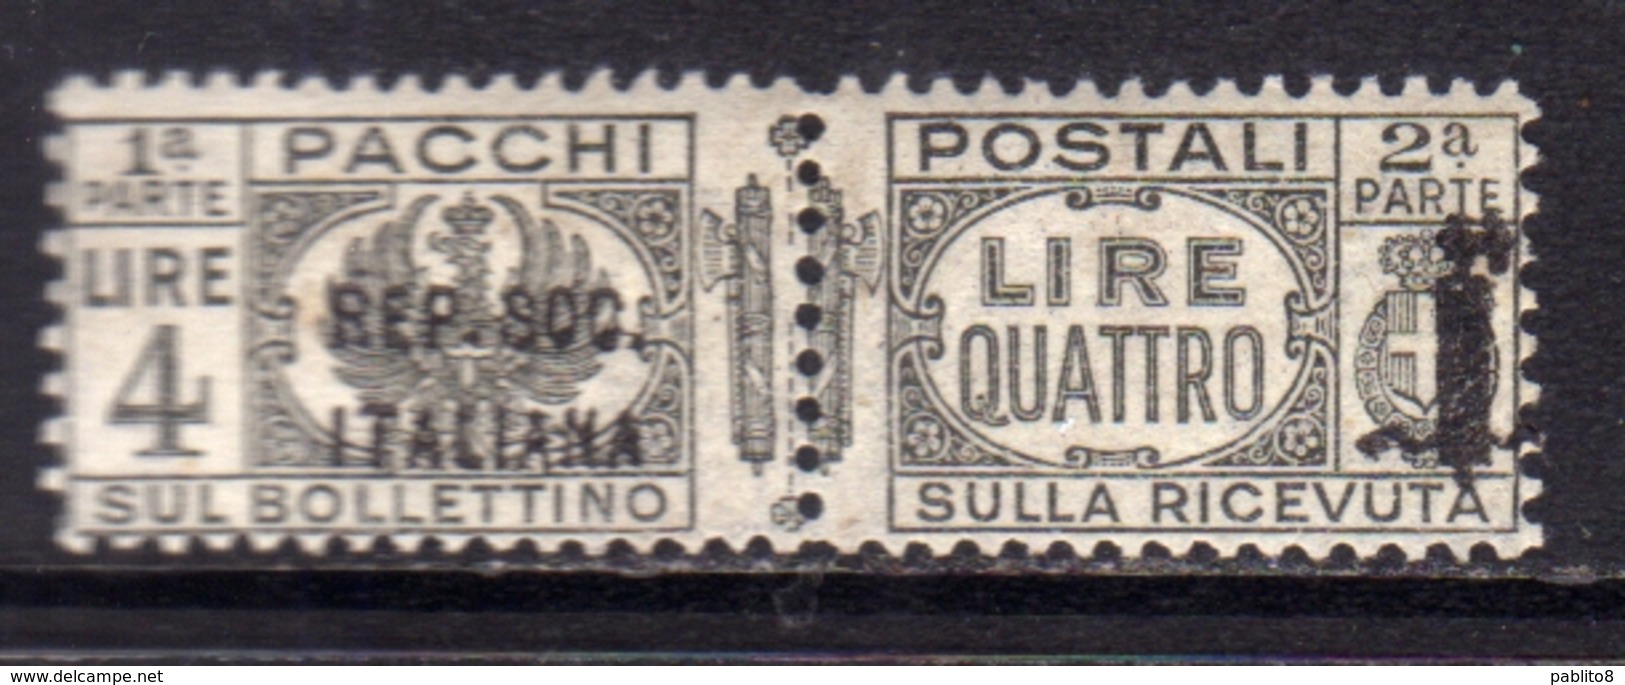 ITALIA REGNO ITALY 1944 VARIETÀ RSI REPUBBLICA SOCIALE ITALIANA PACCHI POSTALI PARCEL POST FASCIO LIRE 4 MNH FIRMATO - Colis-postaux